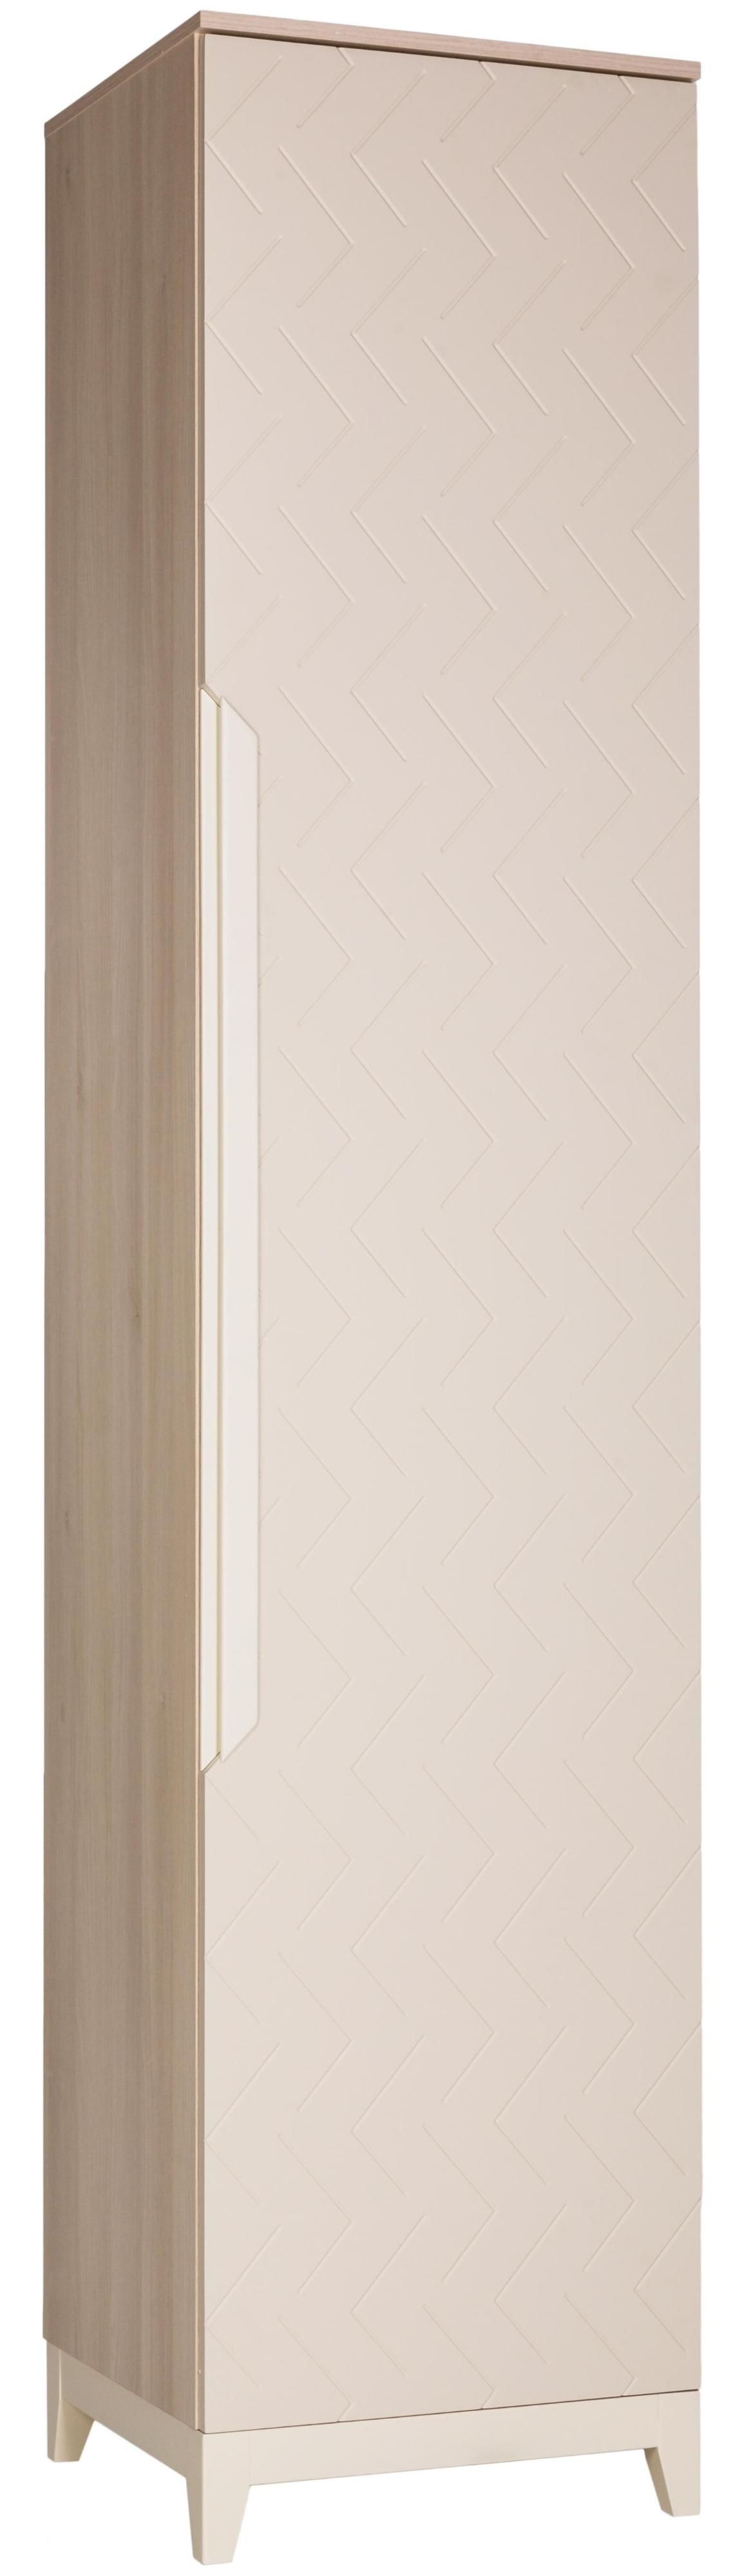 Шкаф Helvant одностворчатый универсальный Скандер  45 см Жемчужно-белый